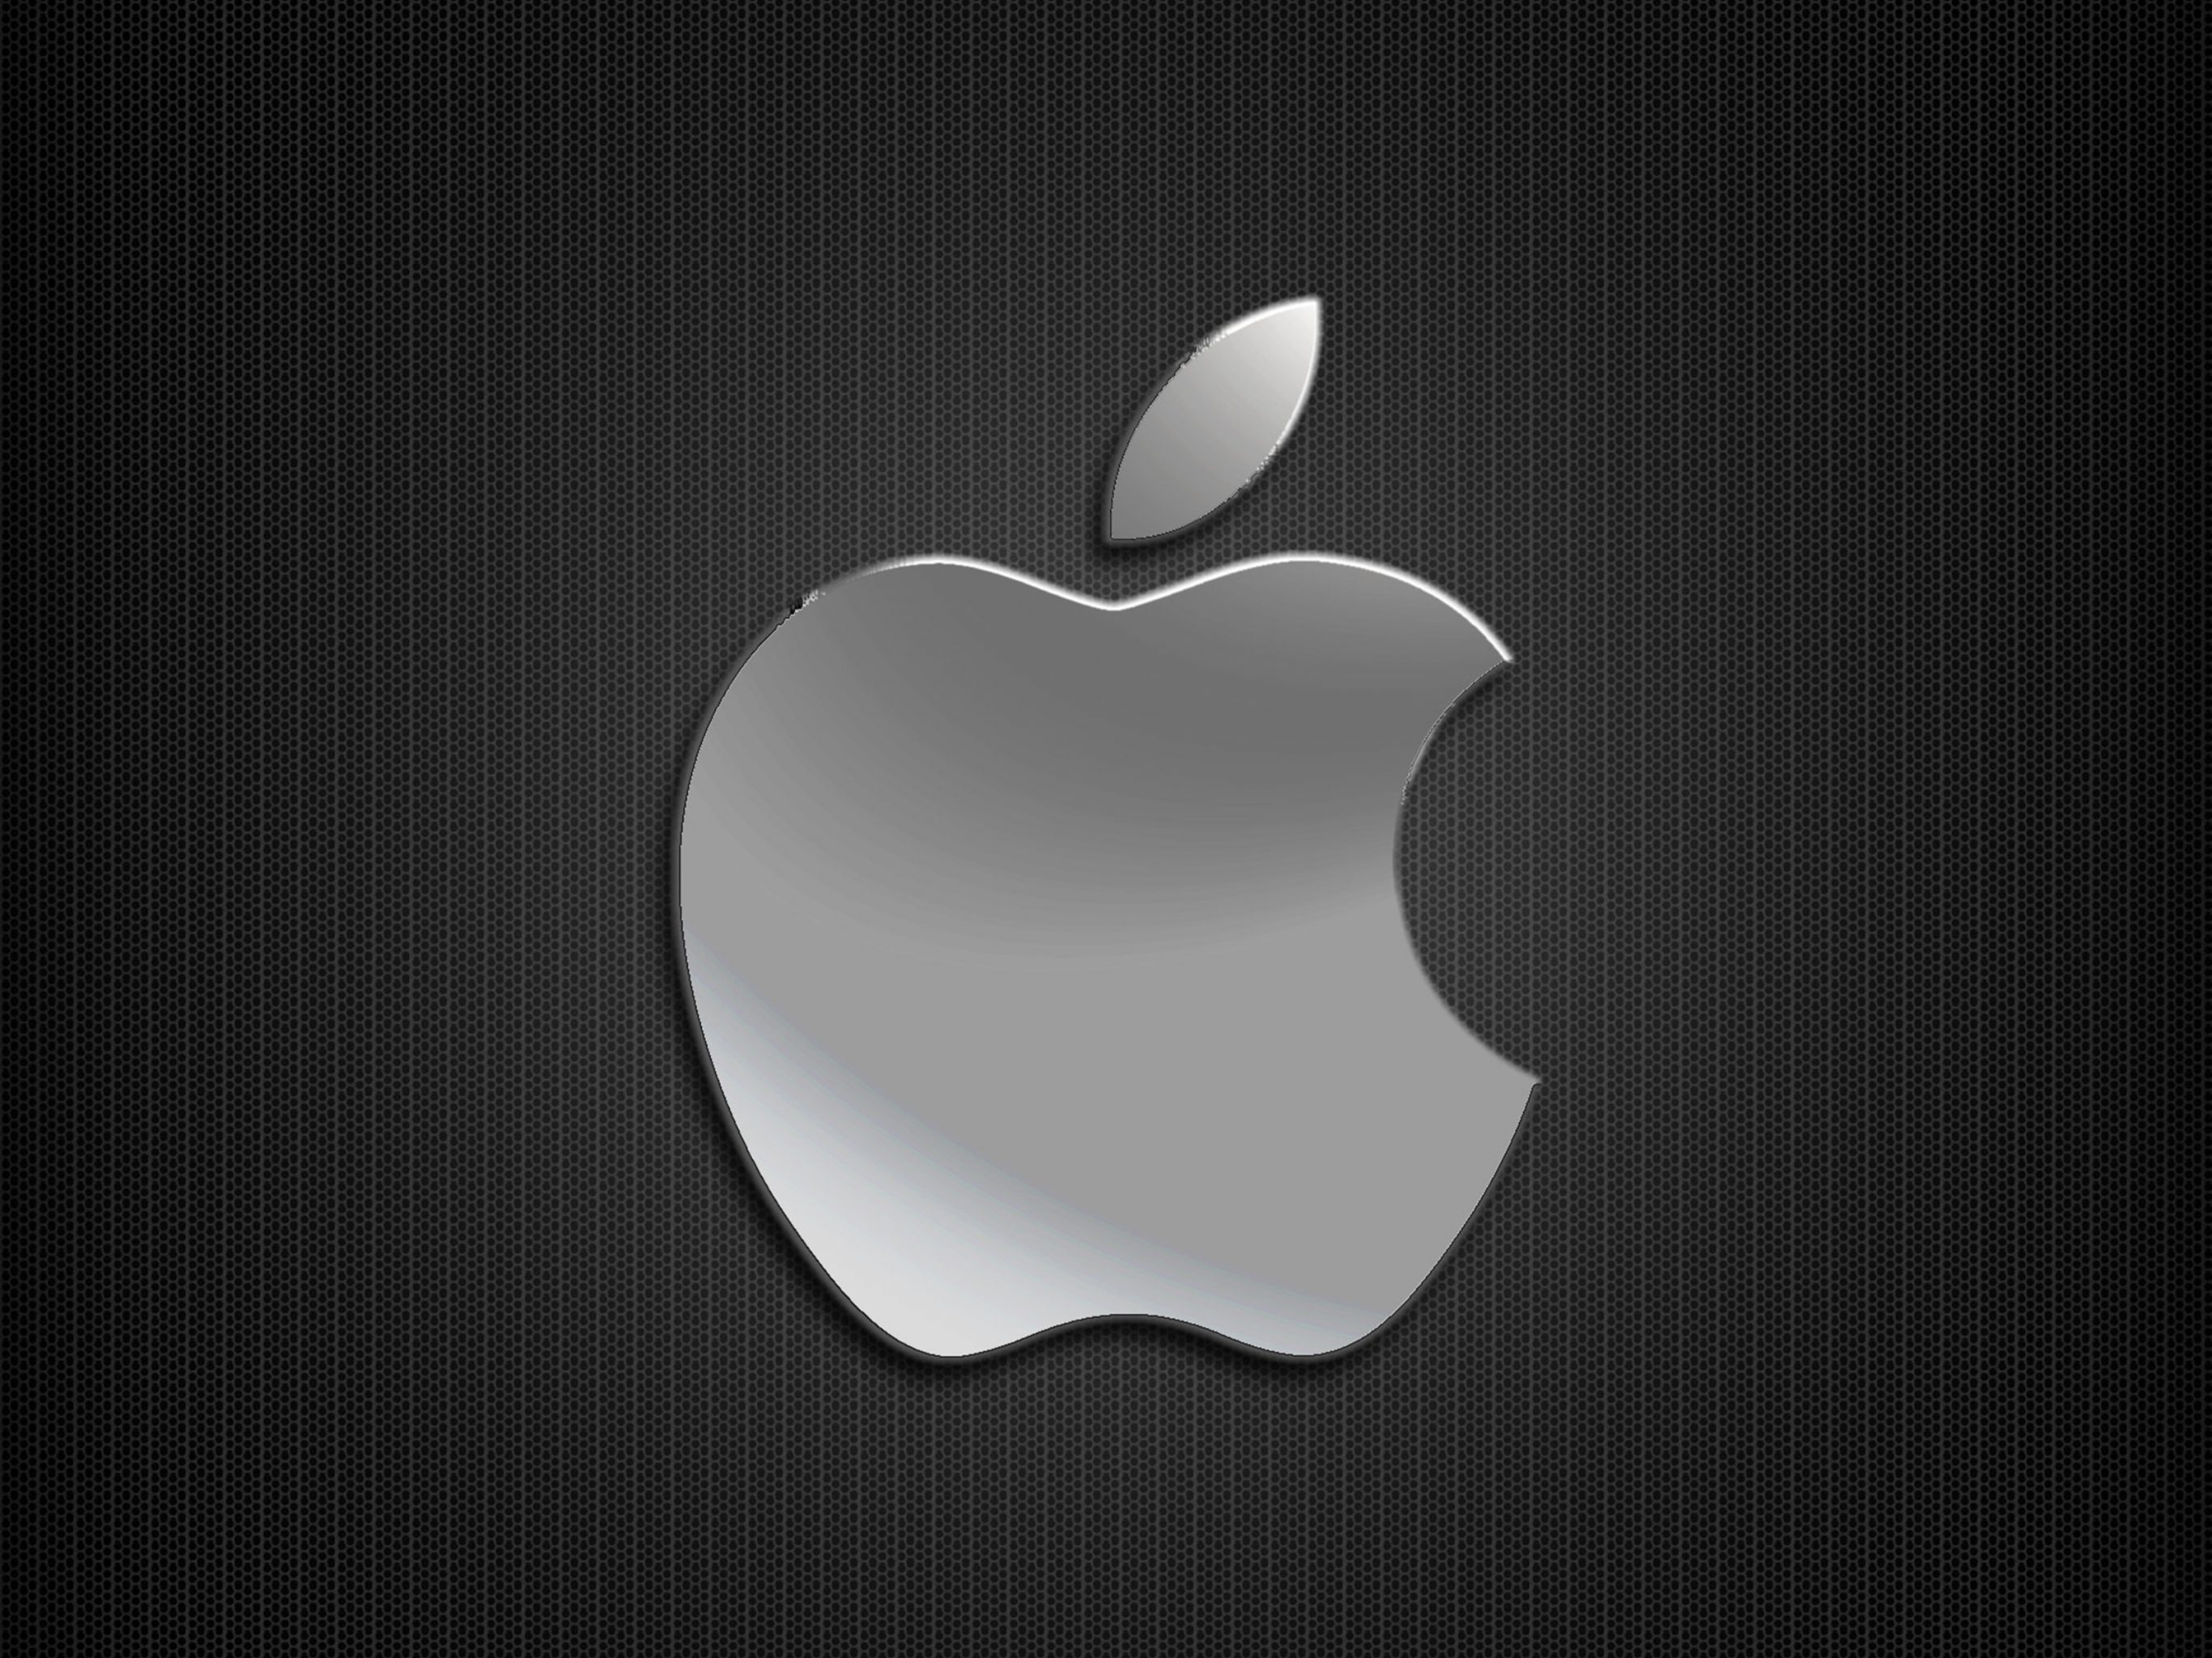 Обои на айфон без. Эпл яблоко айфон. Заставка на айфон. Логотип Apple. Обои Apple.